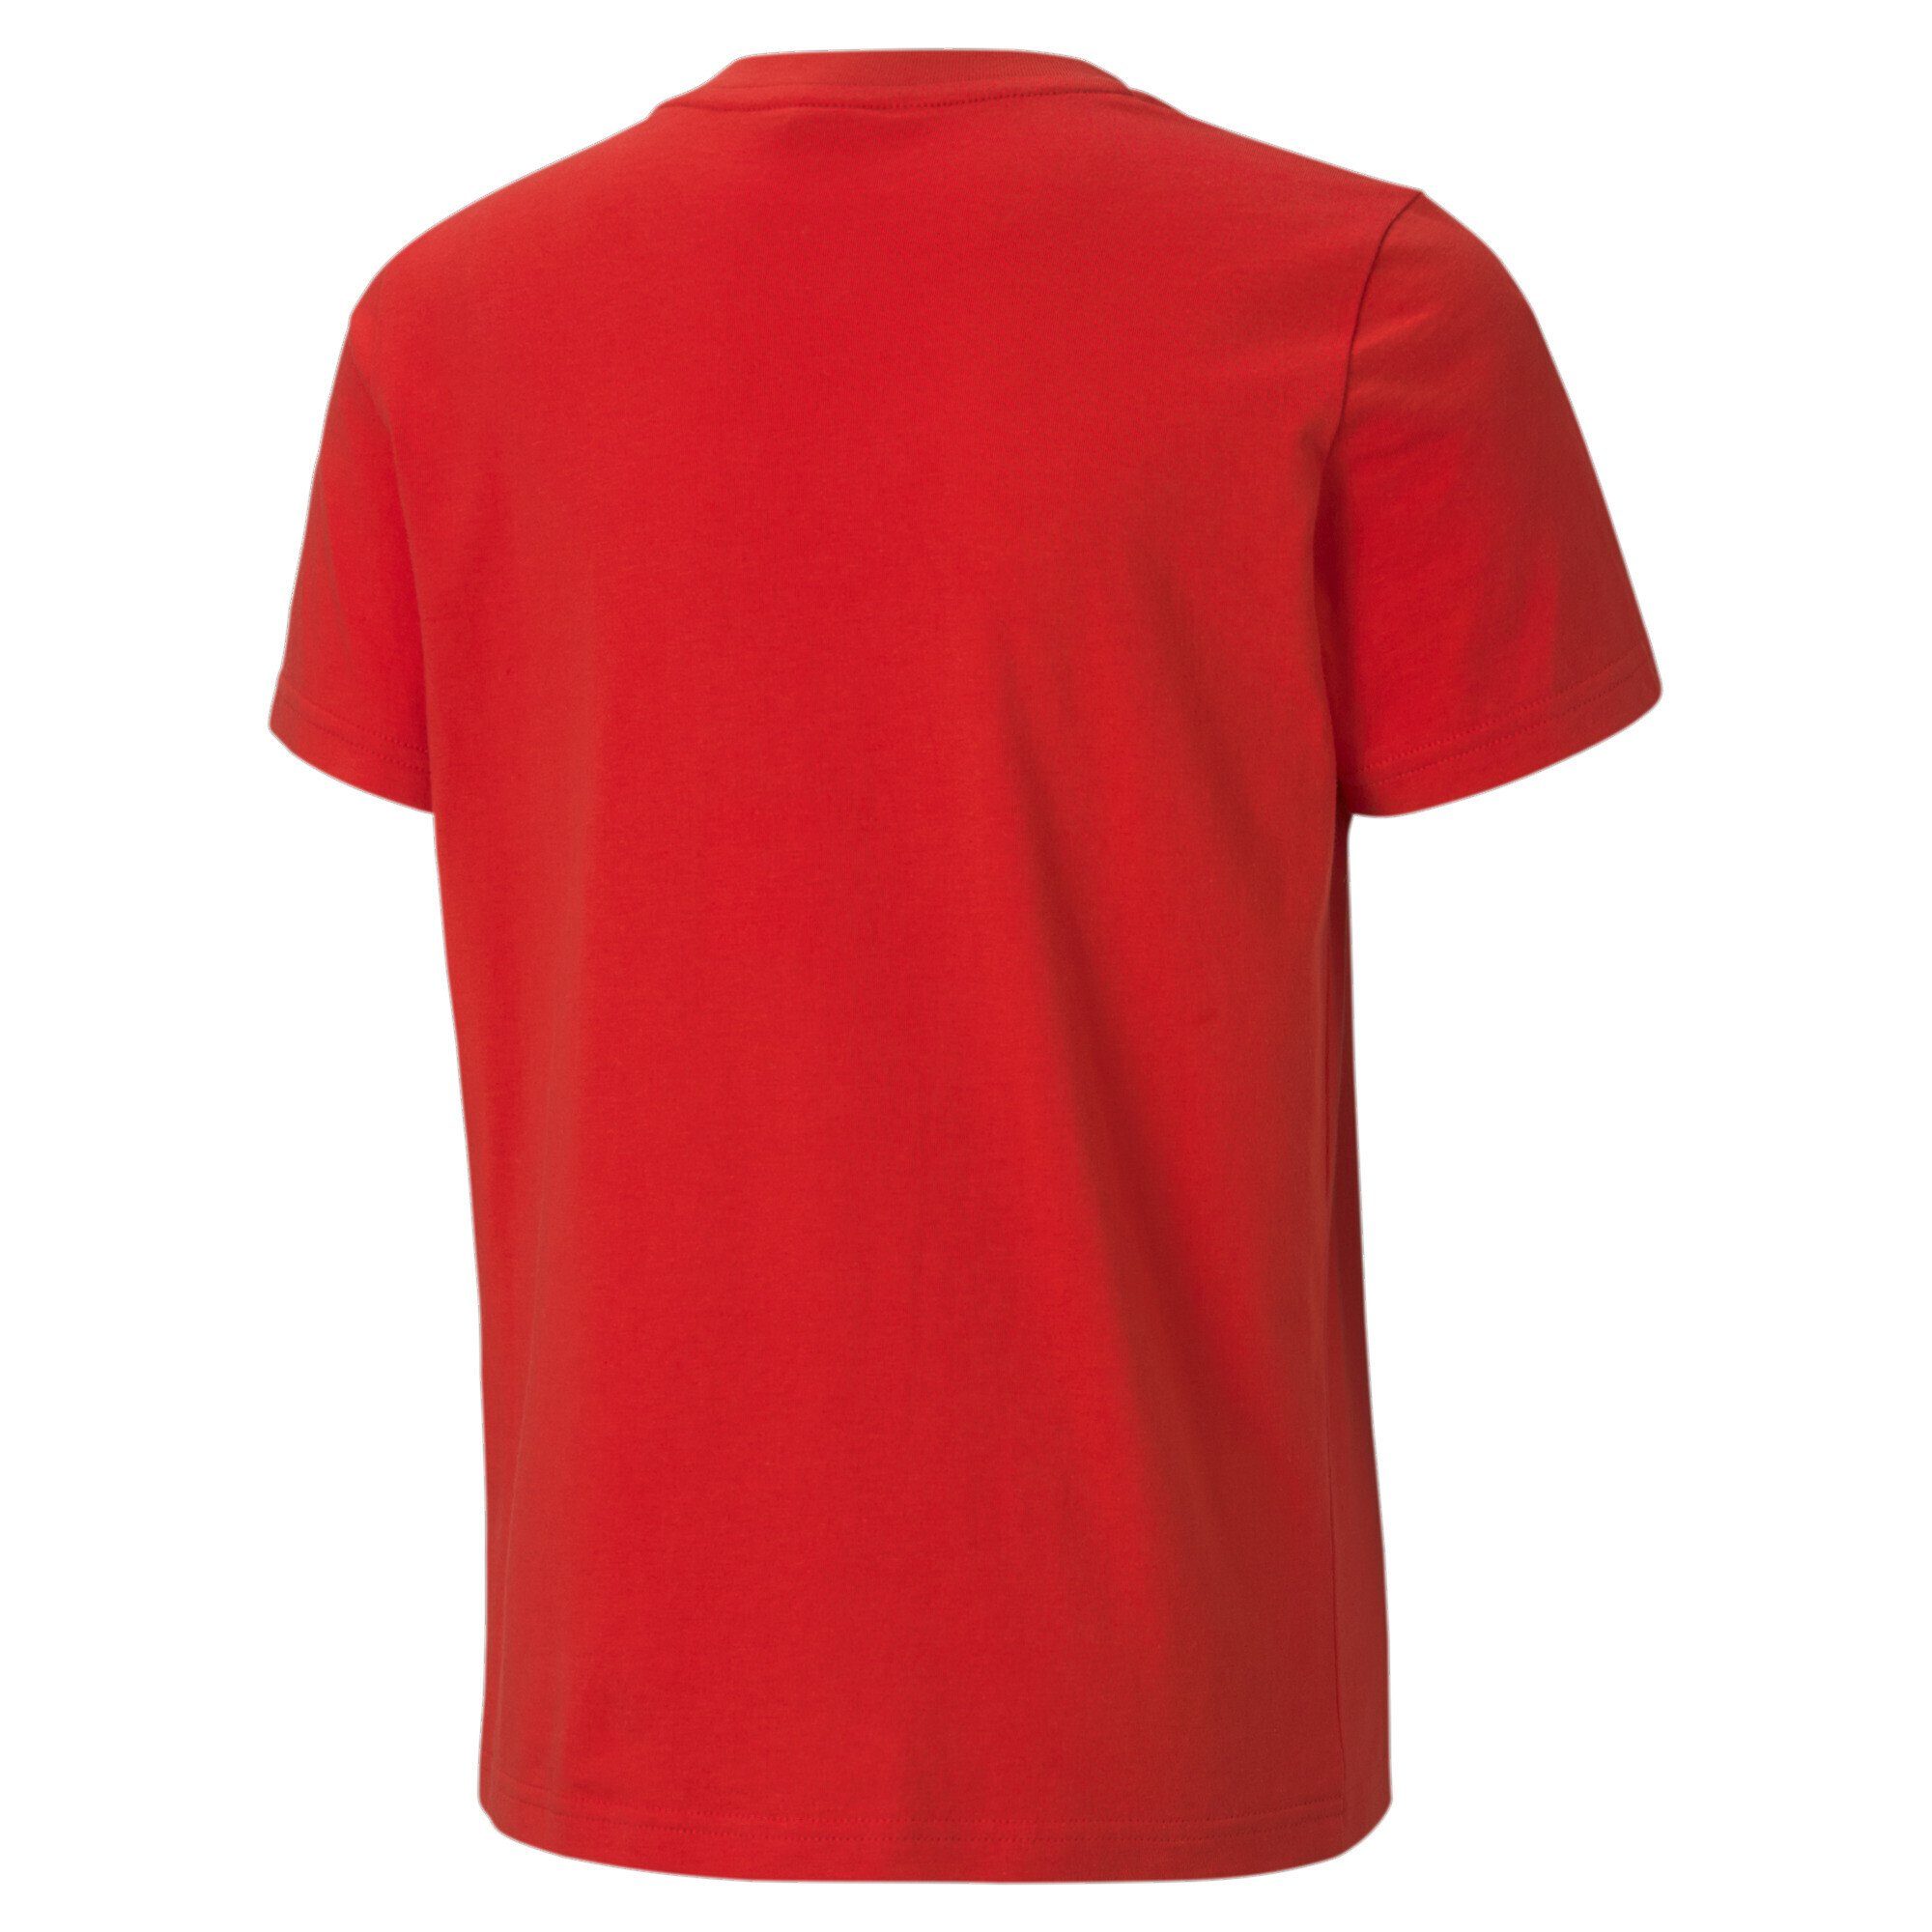 PUMA T-Shirt High T-Shirt Jungen Classics B Red Risk